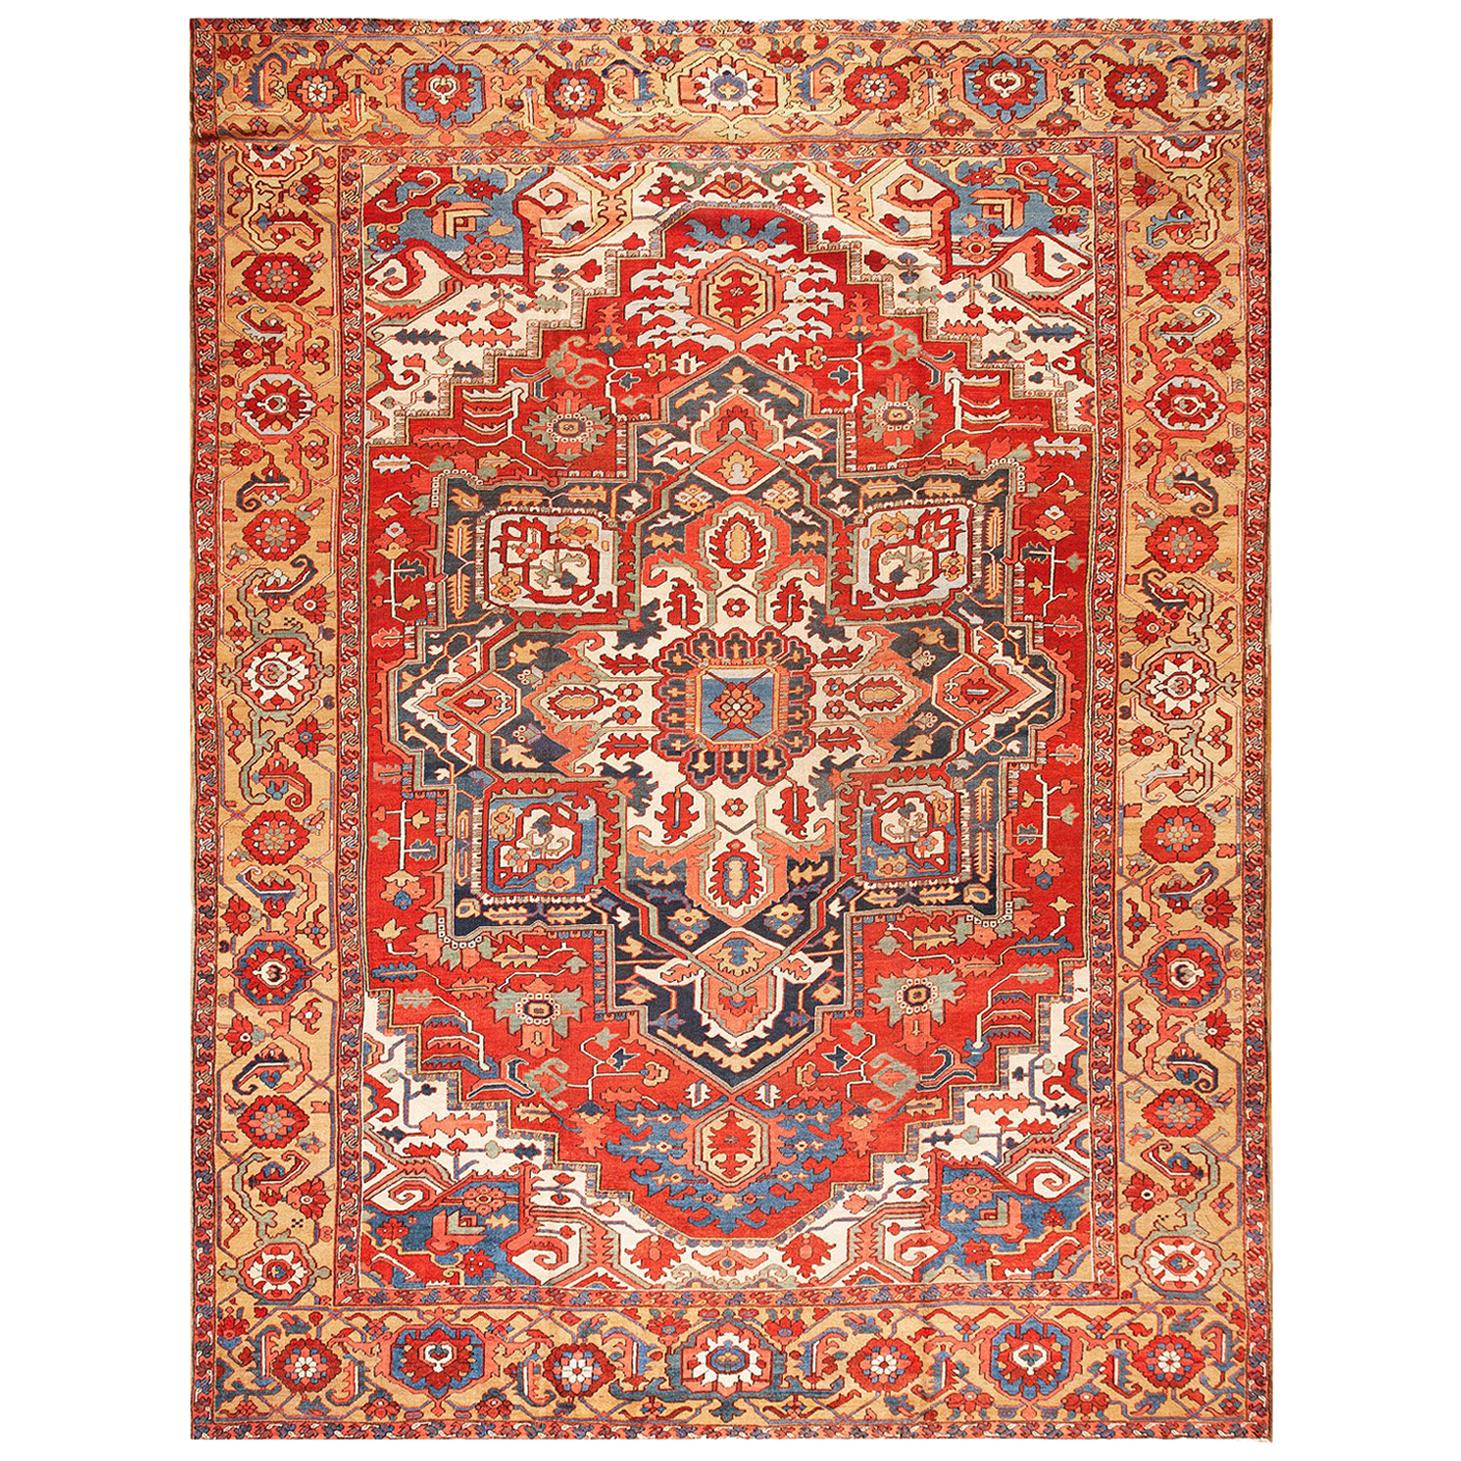 Persischer Heriz-Teppich des späten 19. Jahrhunderts ( 11'6" x 15'8" - 350 x 477)